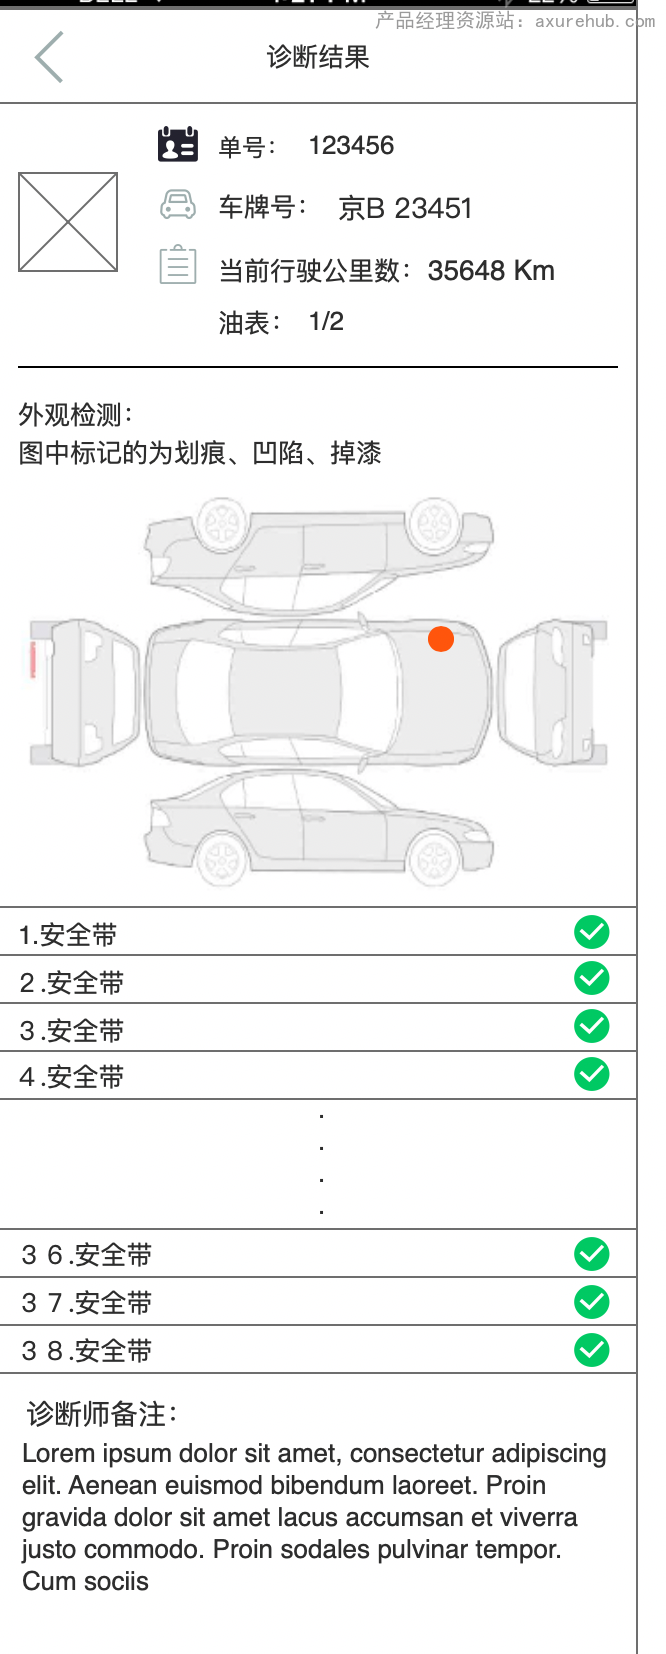 修车技师app/汽车养护app产品axure原型图插图2